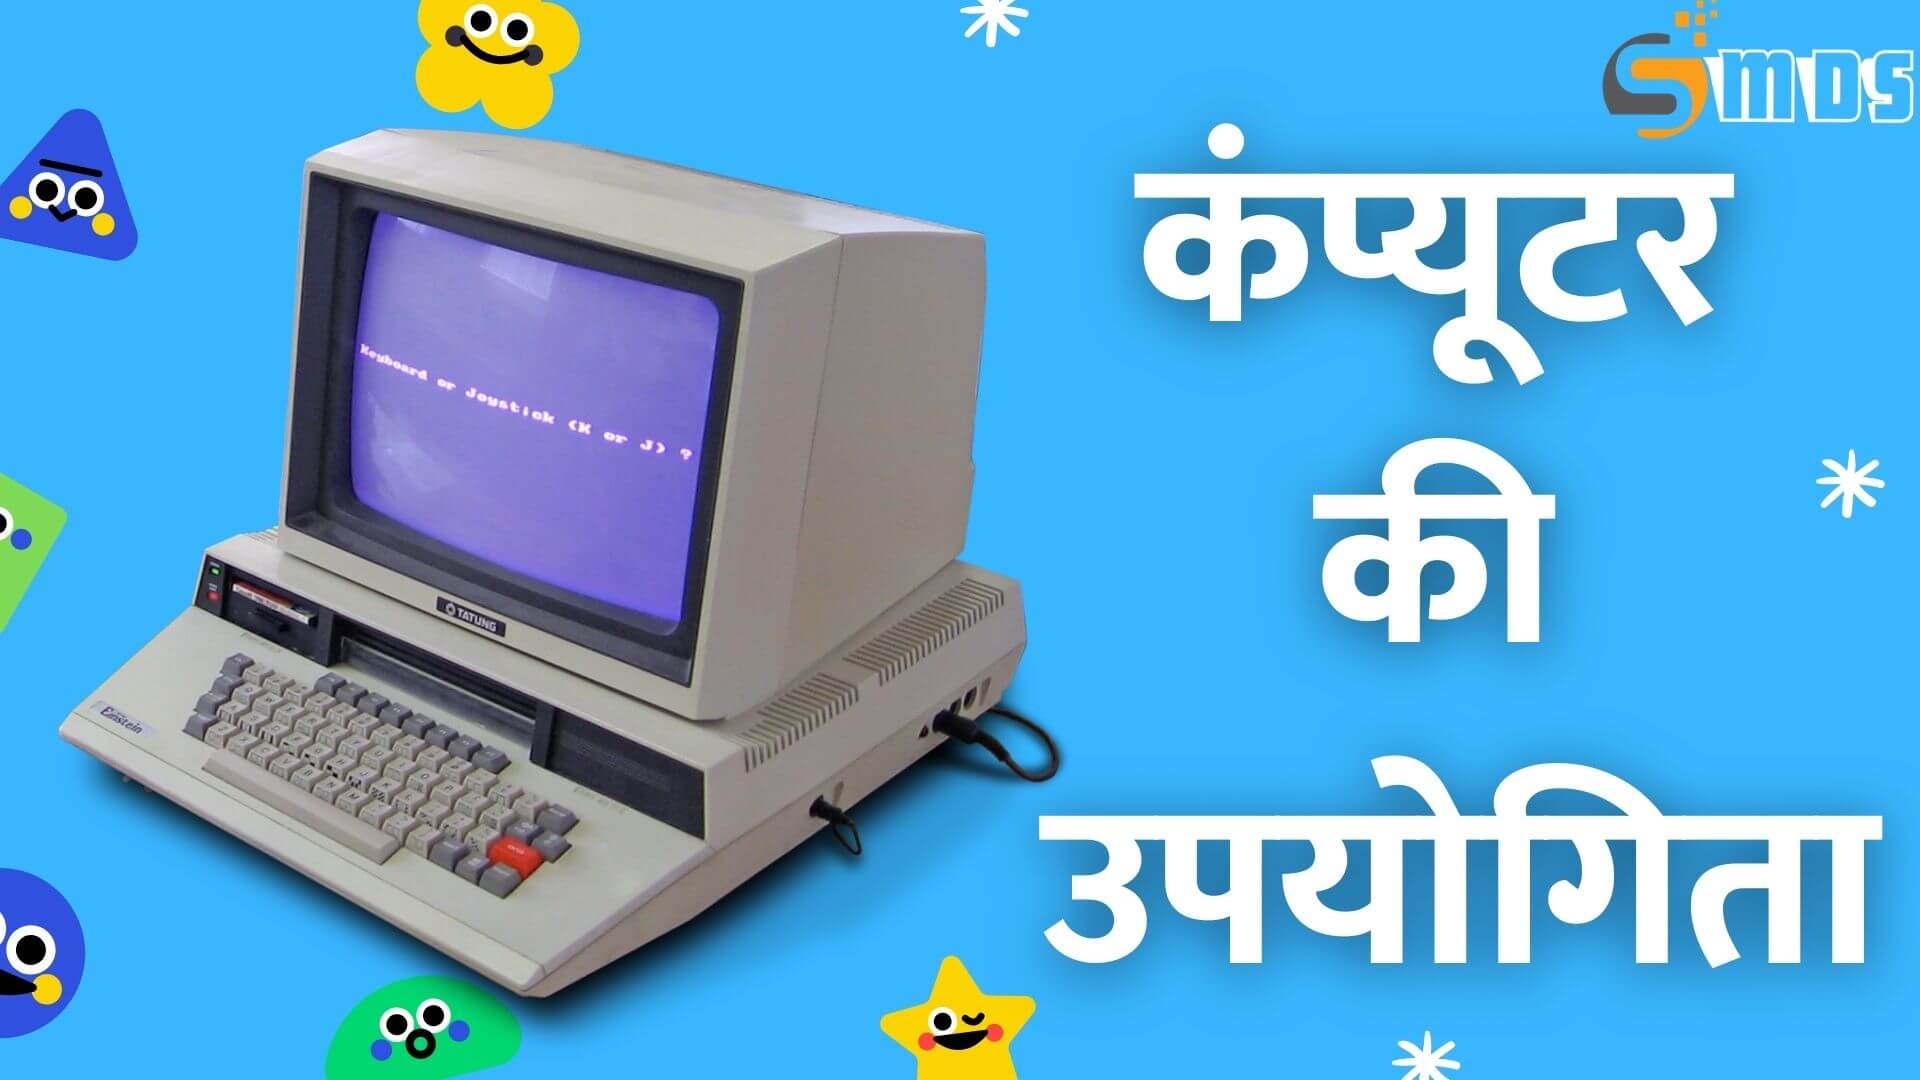 कंप्यूटर की उपयोगिता - Computer utility in Hindi, कंप्यूटर की उपयोगिता पर निबंध